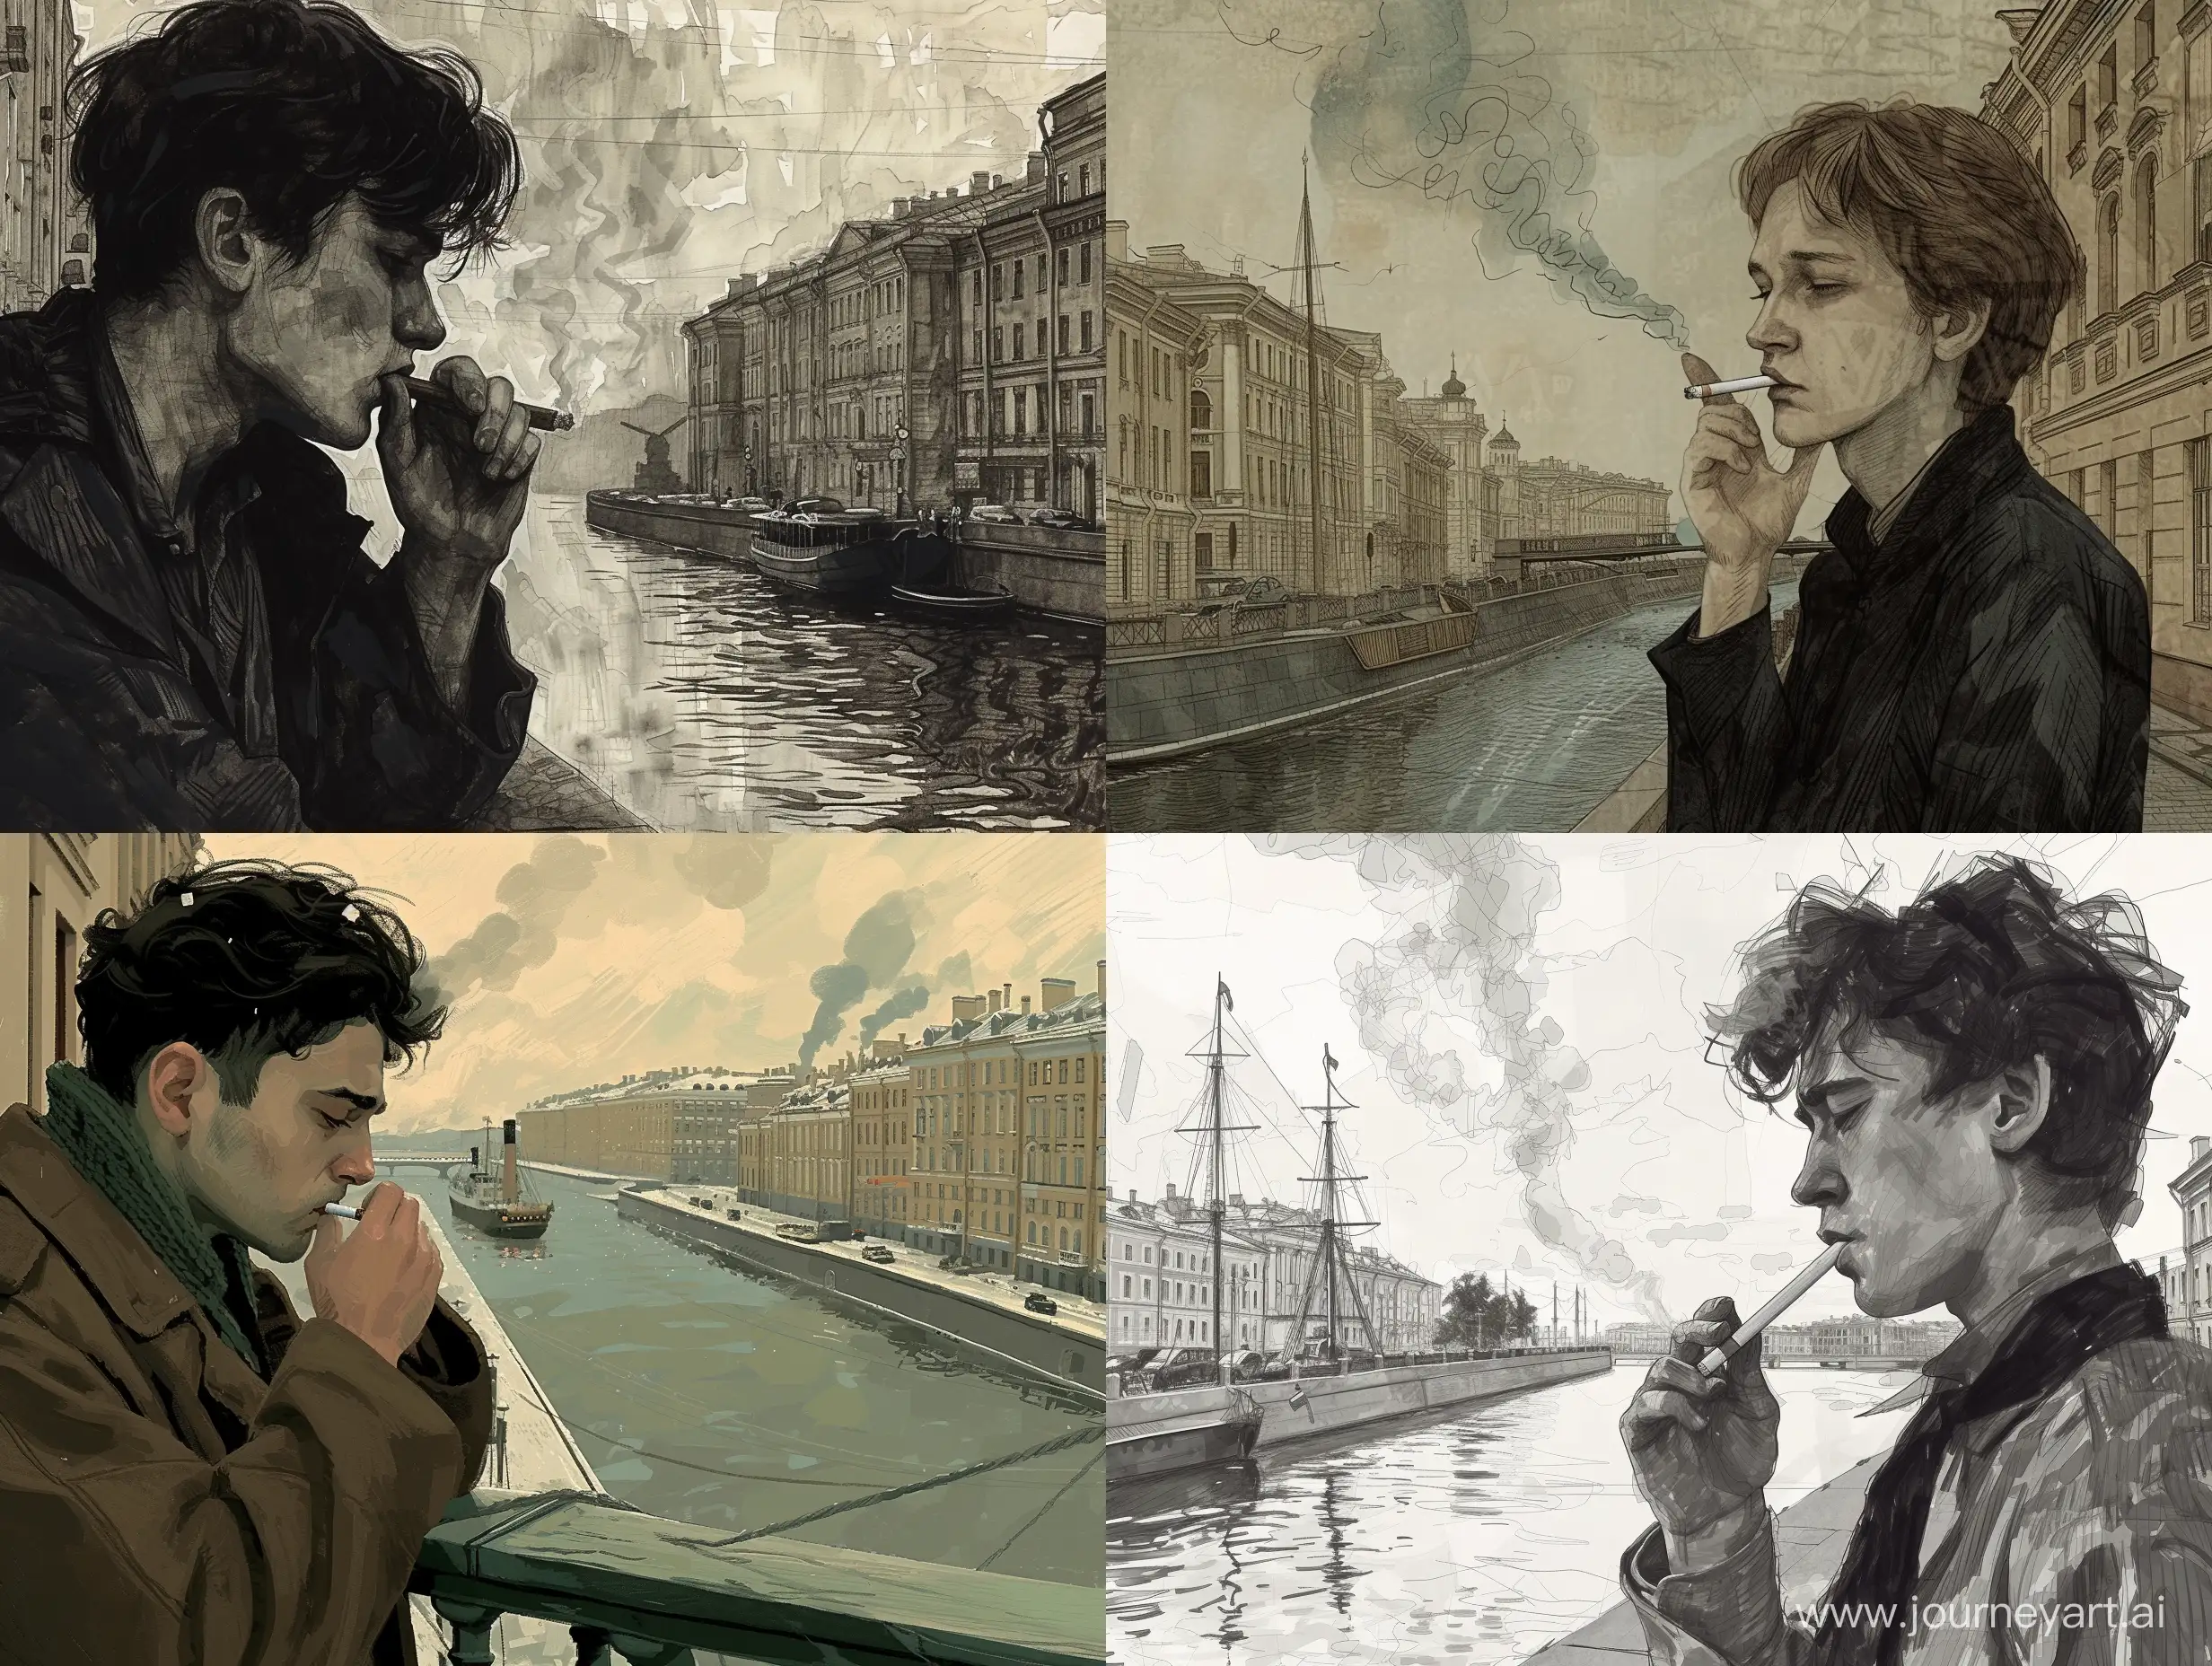 Melancholic-Young-Resident-Smoking-in-19thCentury-St-Petersburg